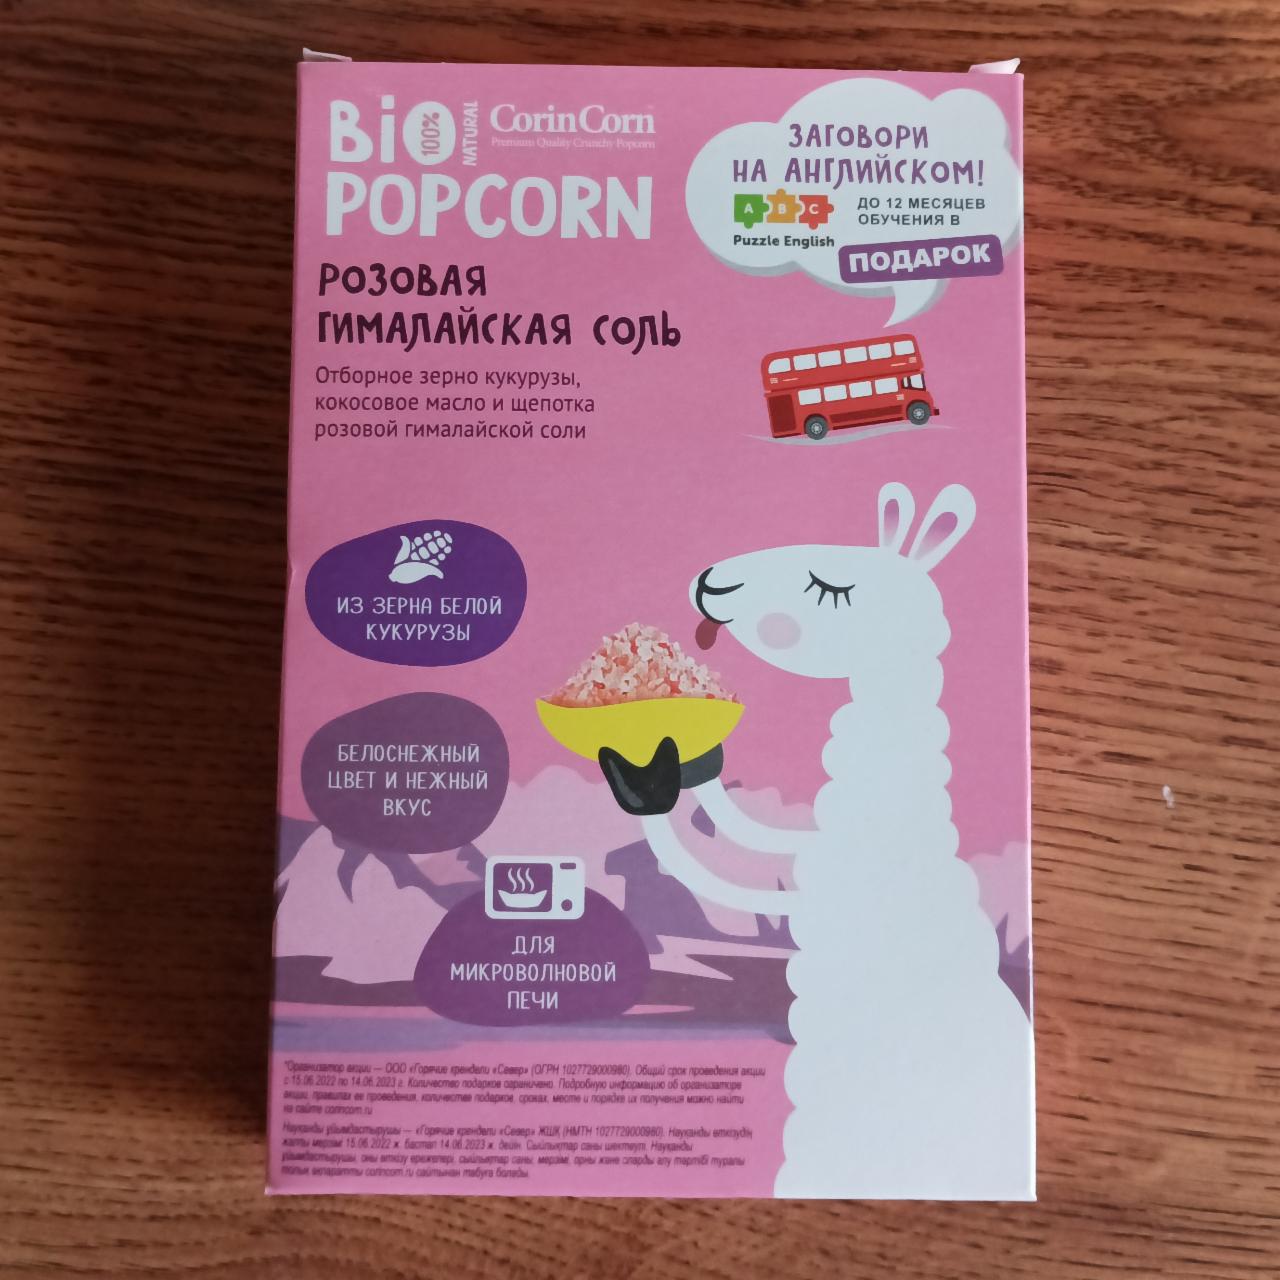 Фото - Попкорн розовая гималайская соль Bio Popcorn Corincorn